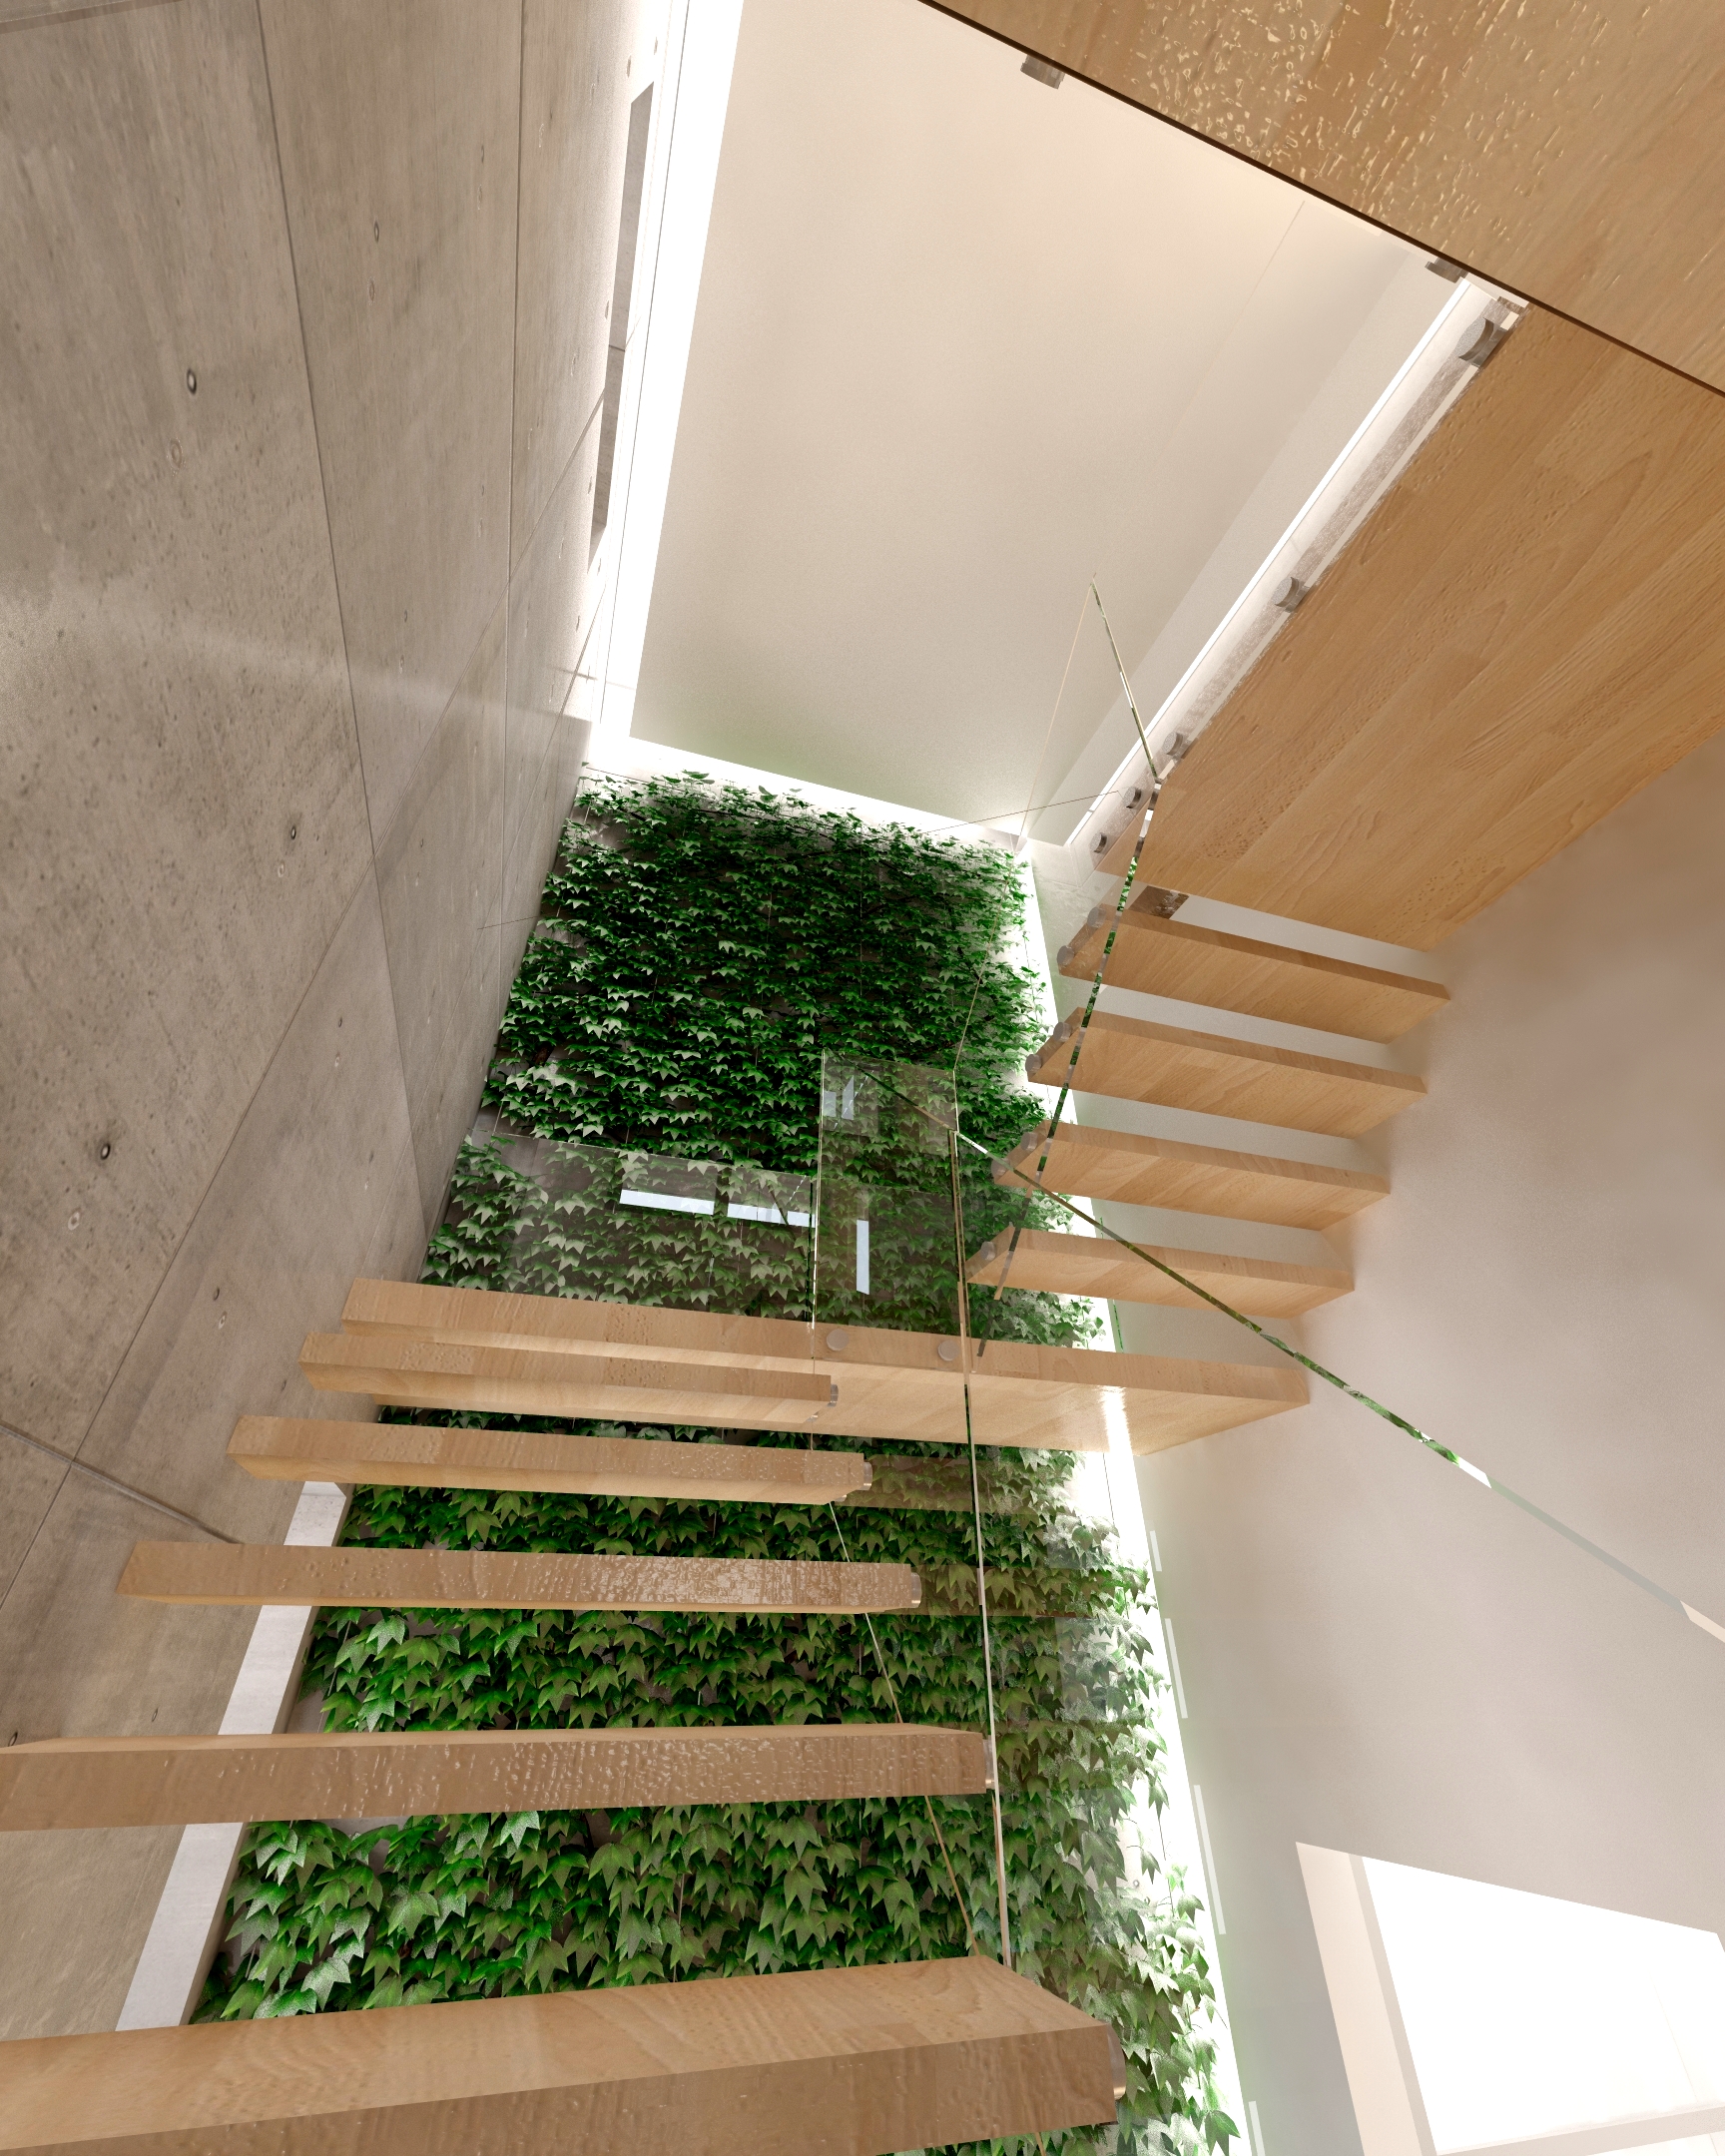 Növényfal- látványterv / Vertical garden - architectural visualization